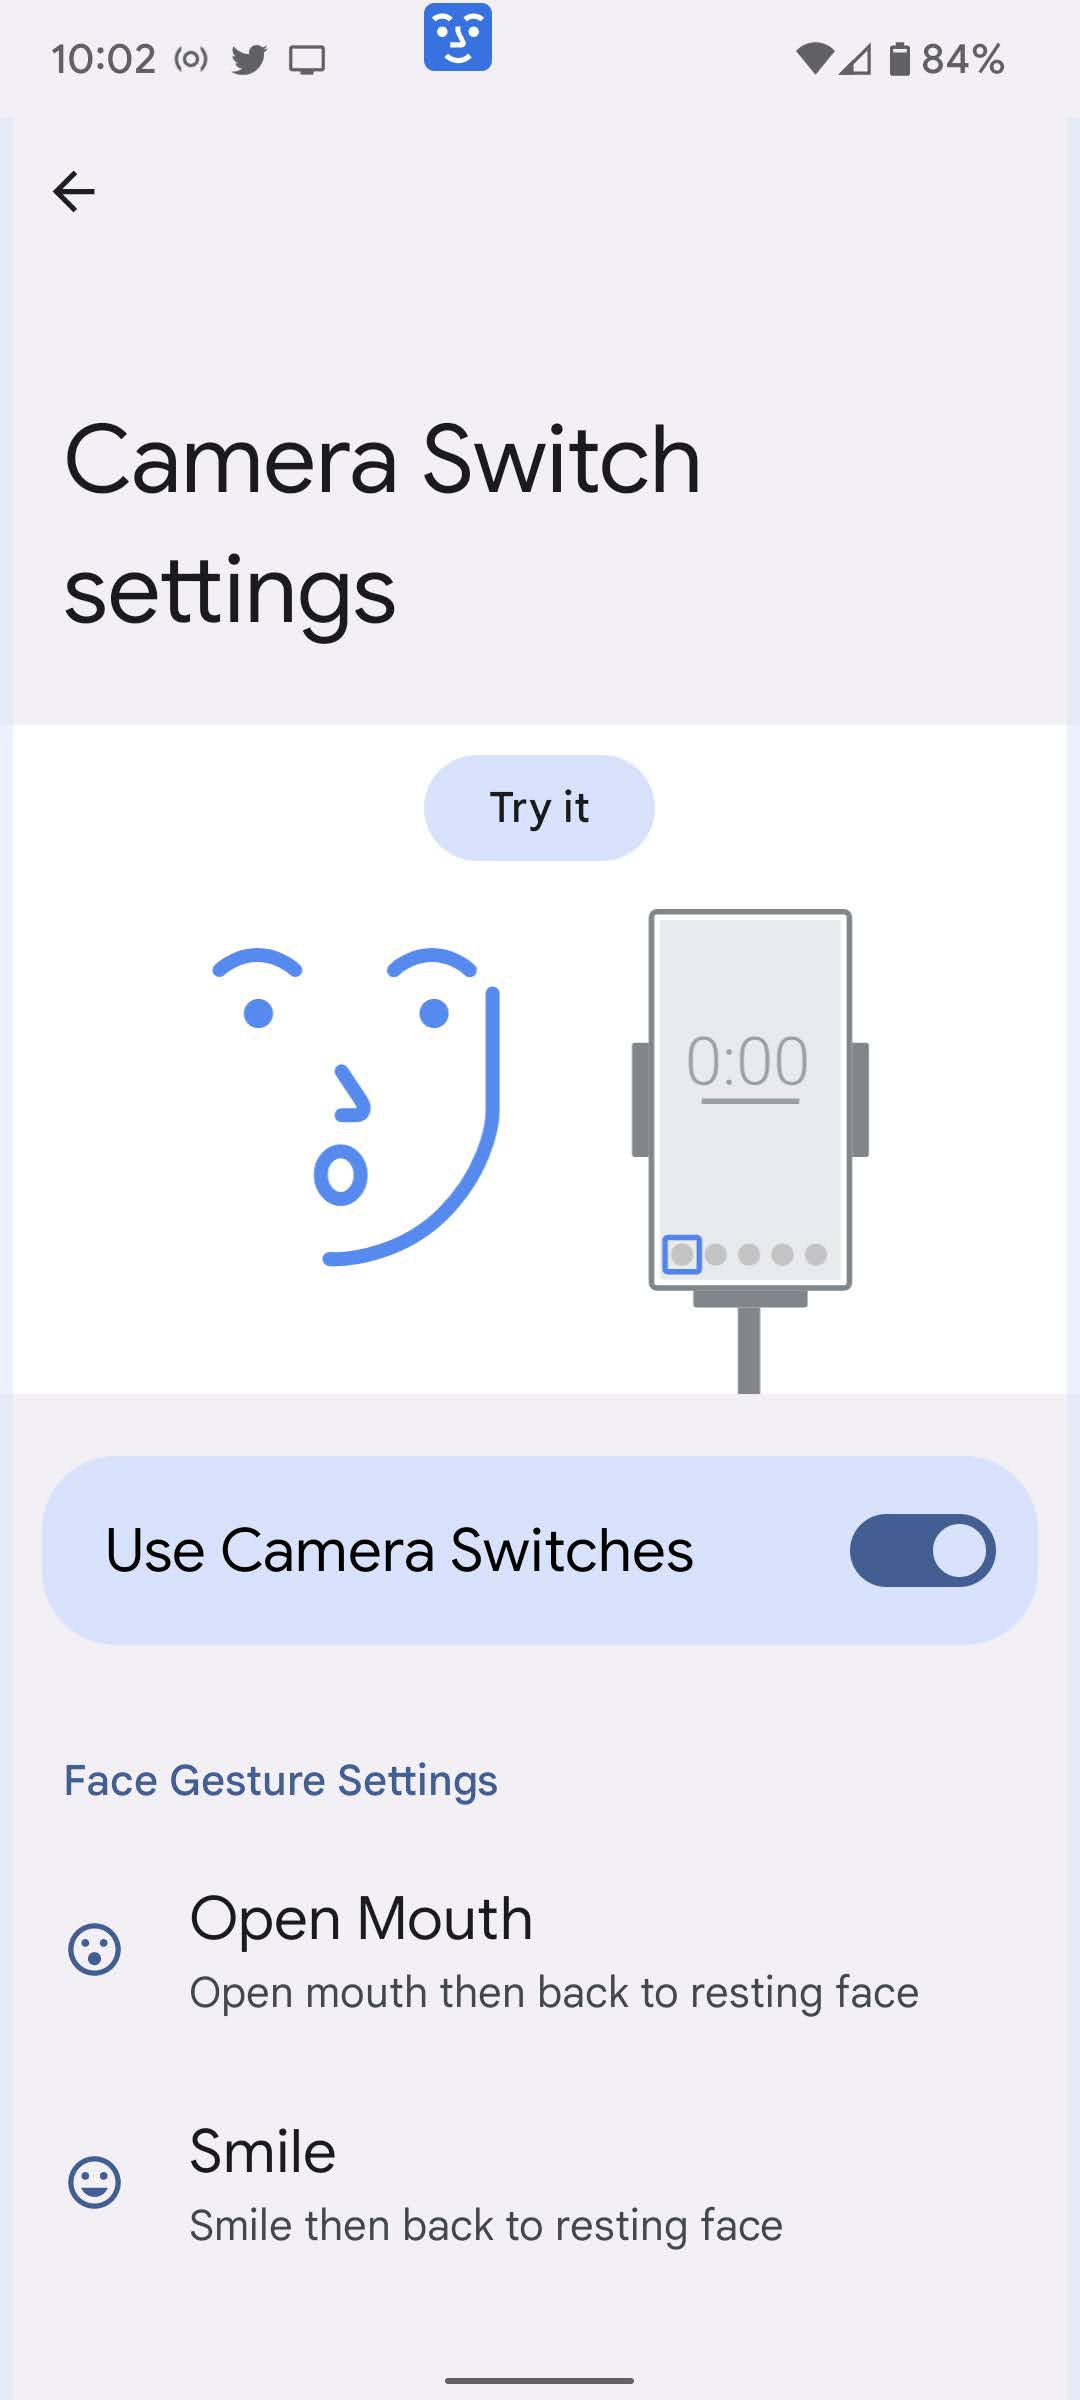 Camera switch settings page